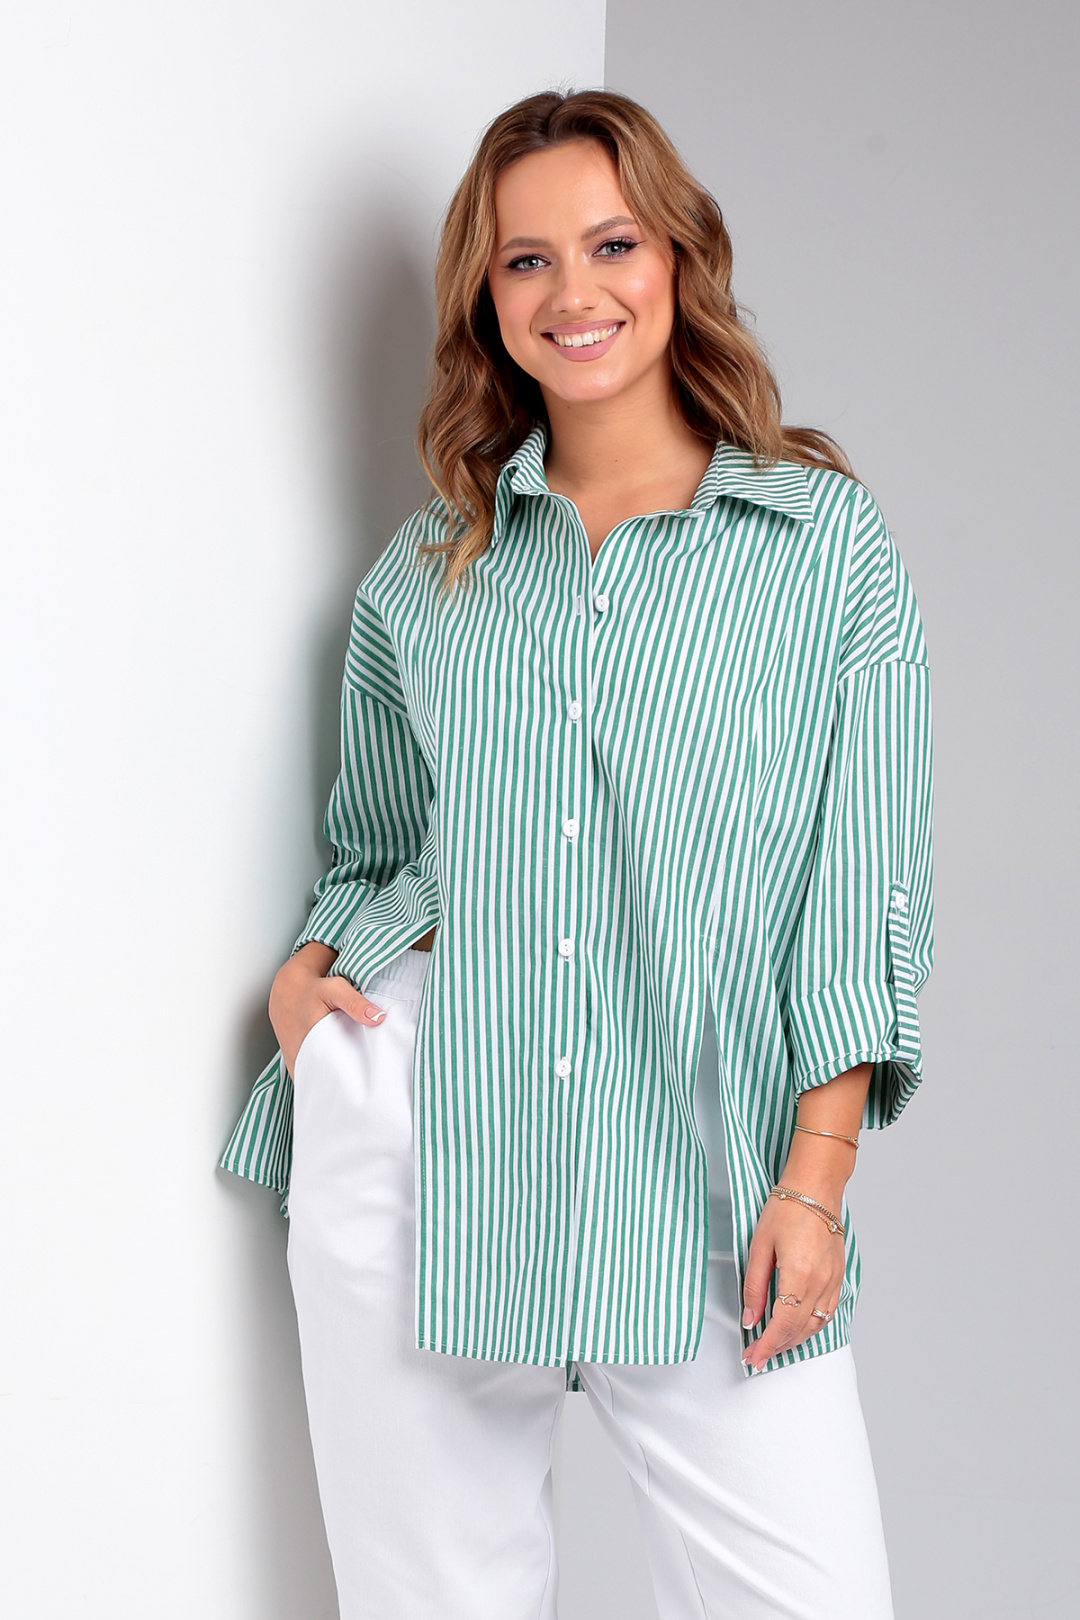 Рубашка Лиона-Стиль 897 зеленая